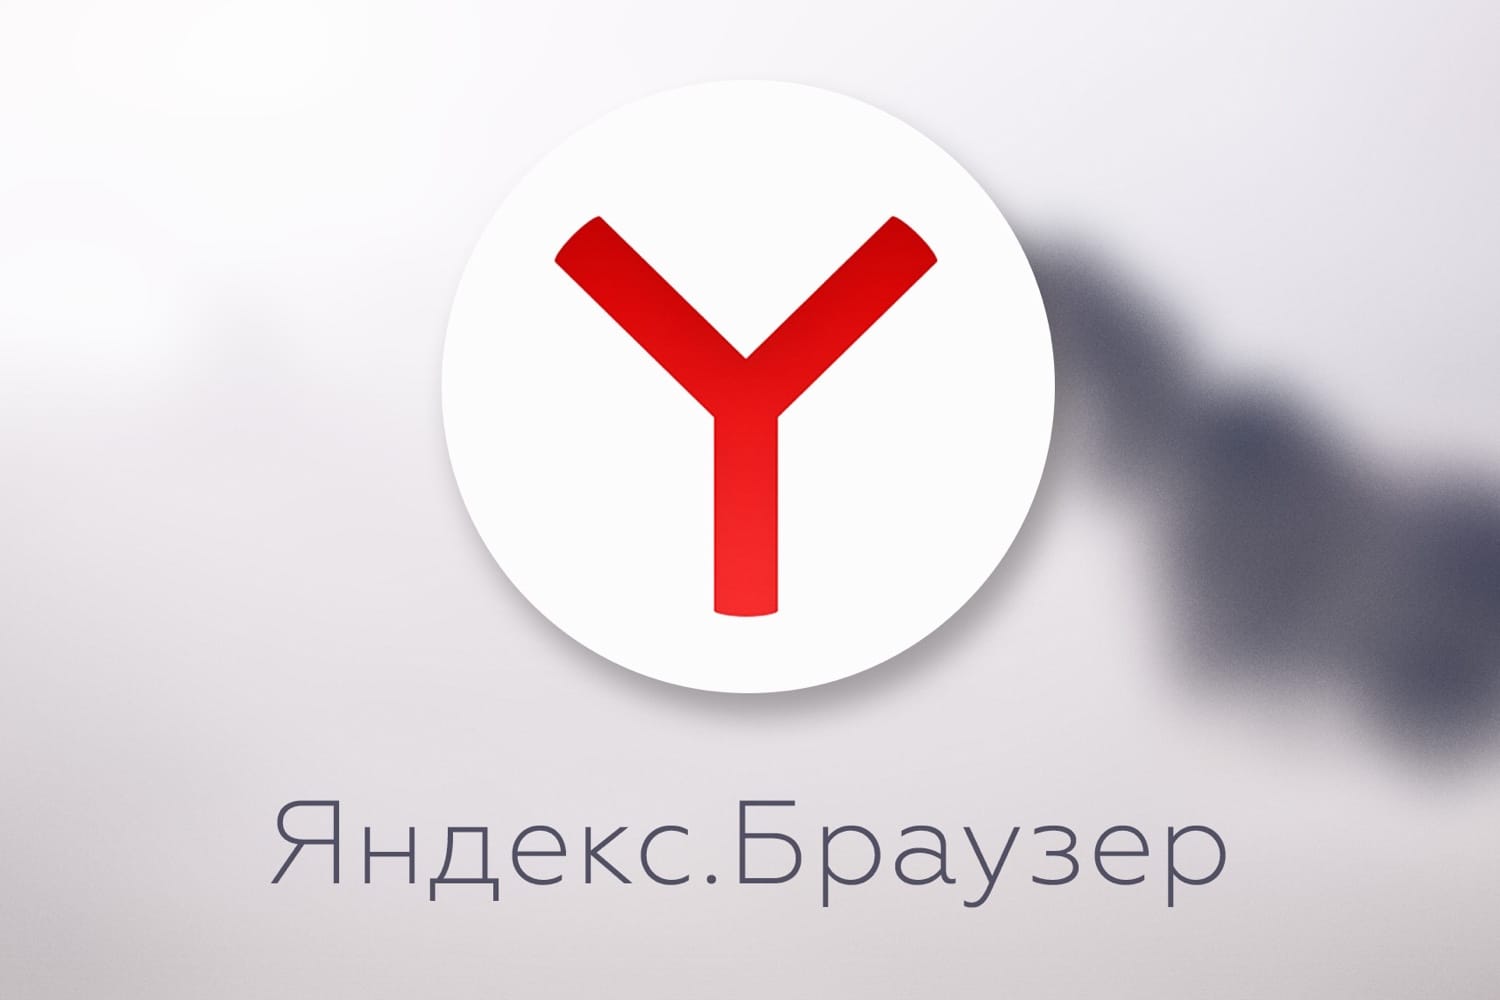 Яндекс браузер фото